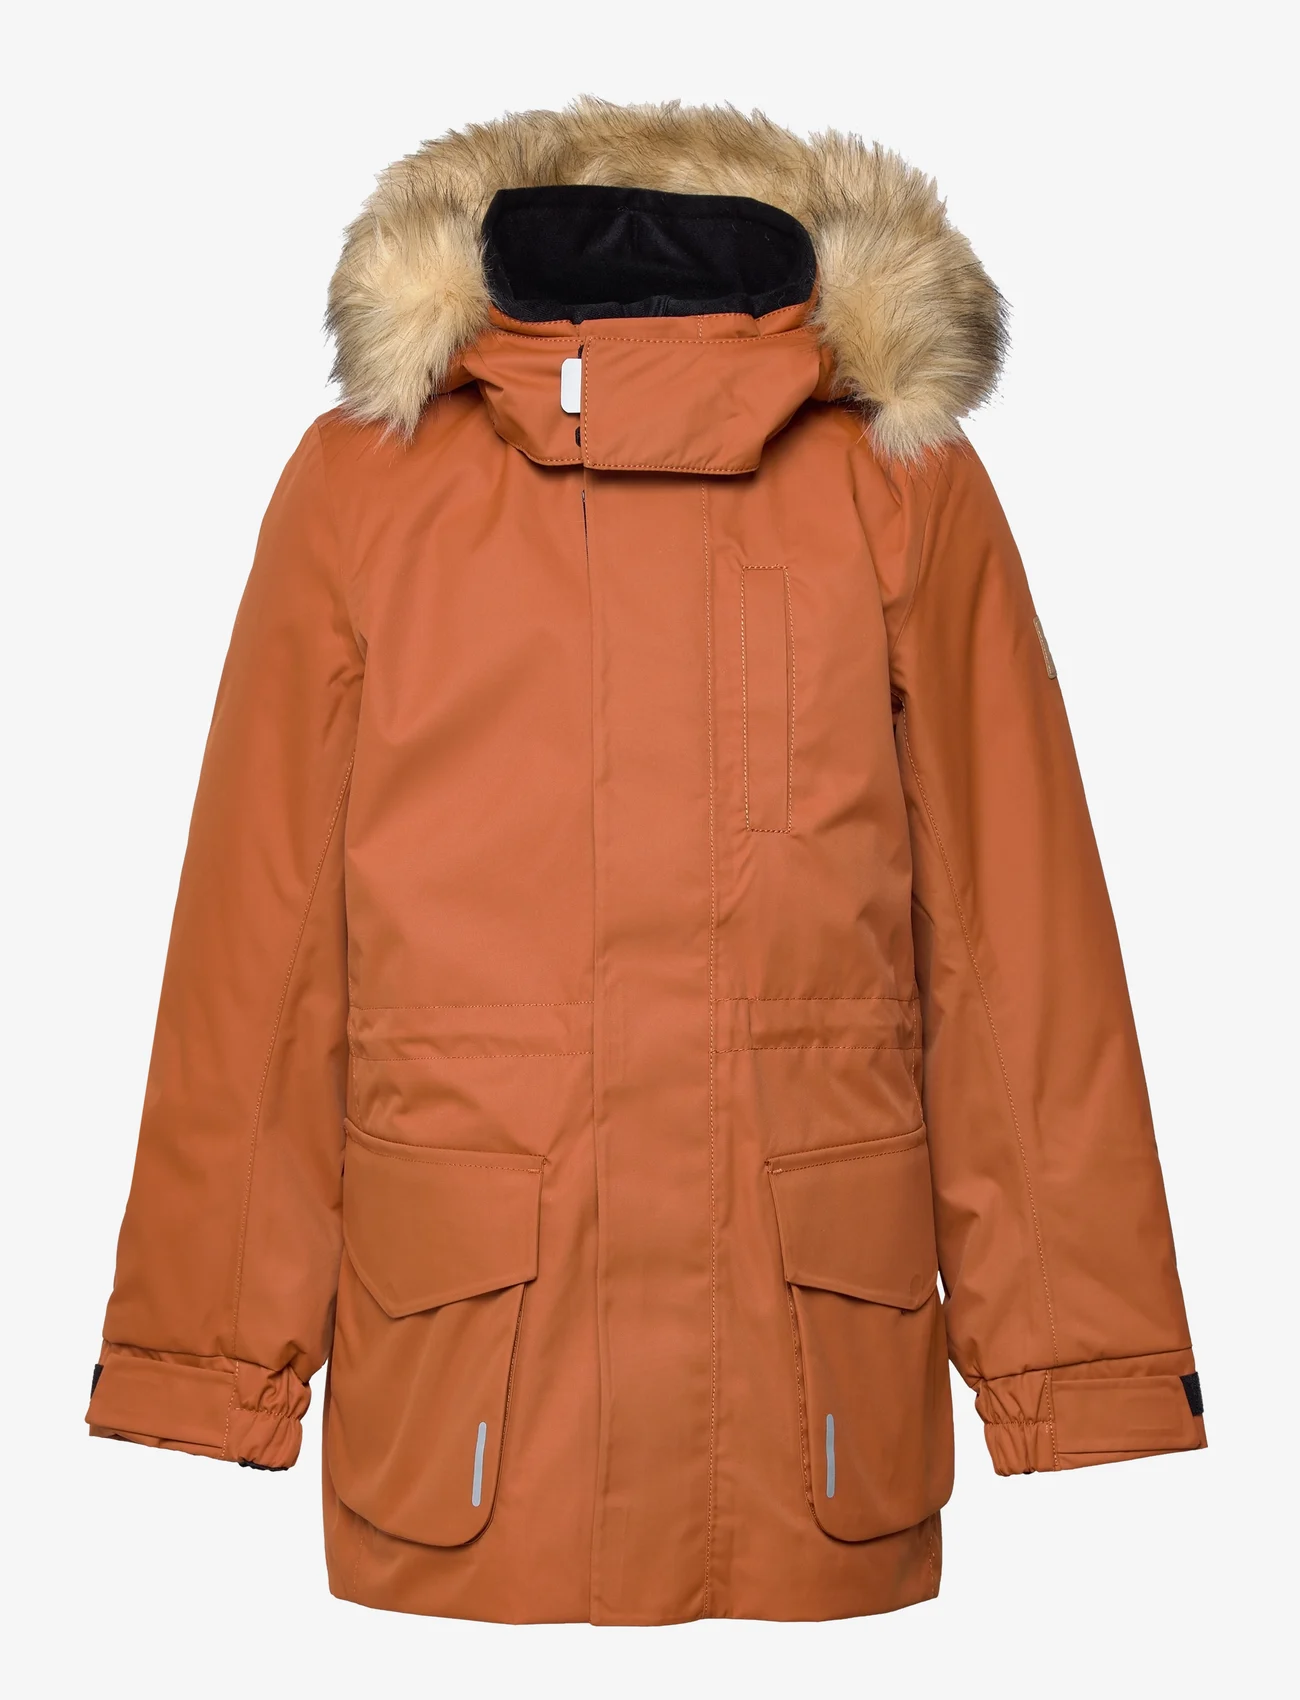 Reima - Reimatec winter jacket, Naapuri - geïsoleerde jassen - cinnamon brown - 0